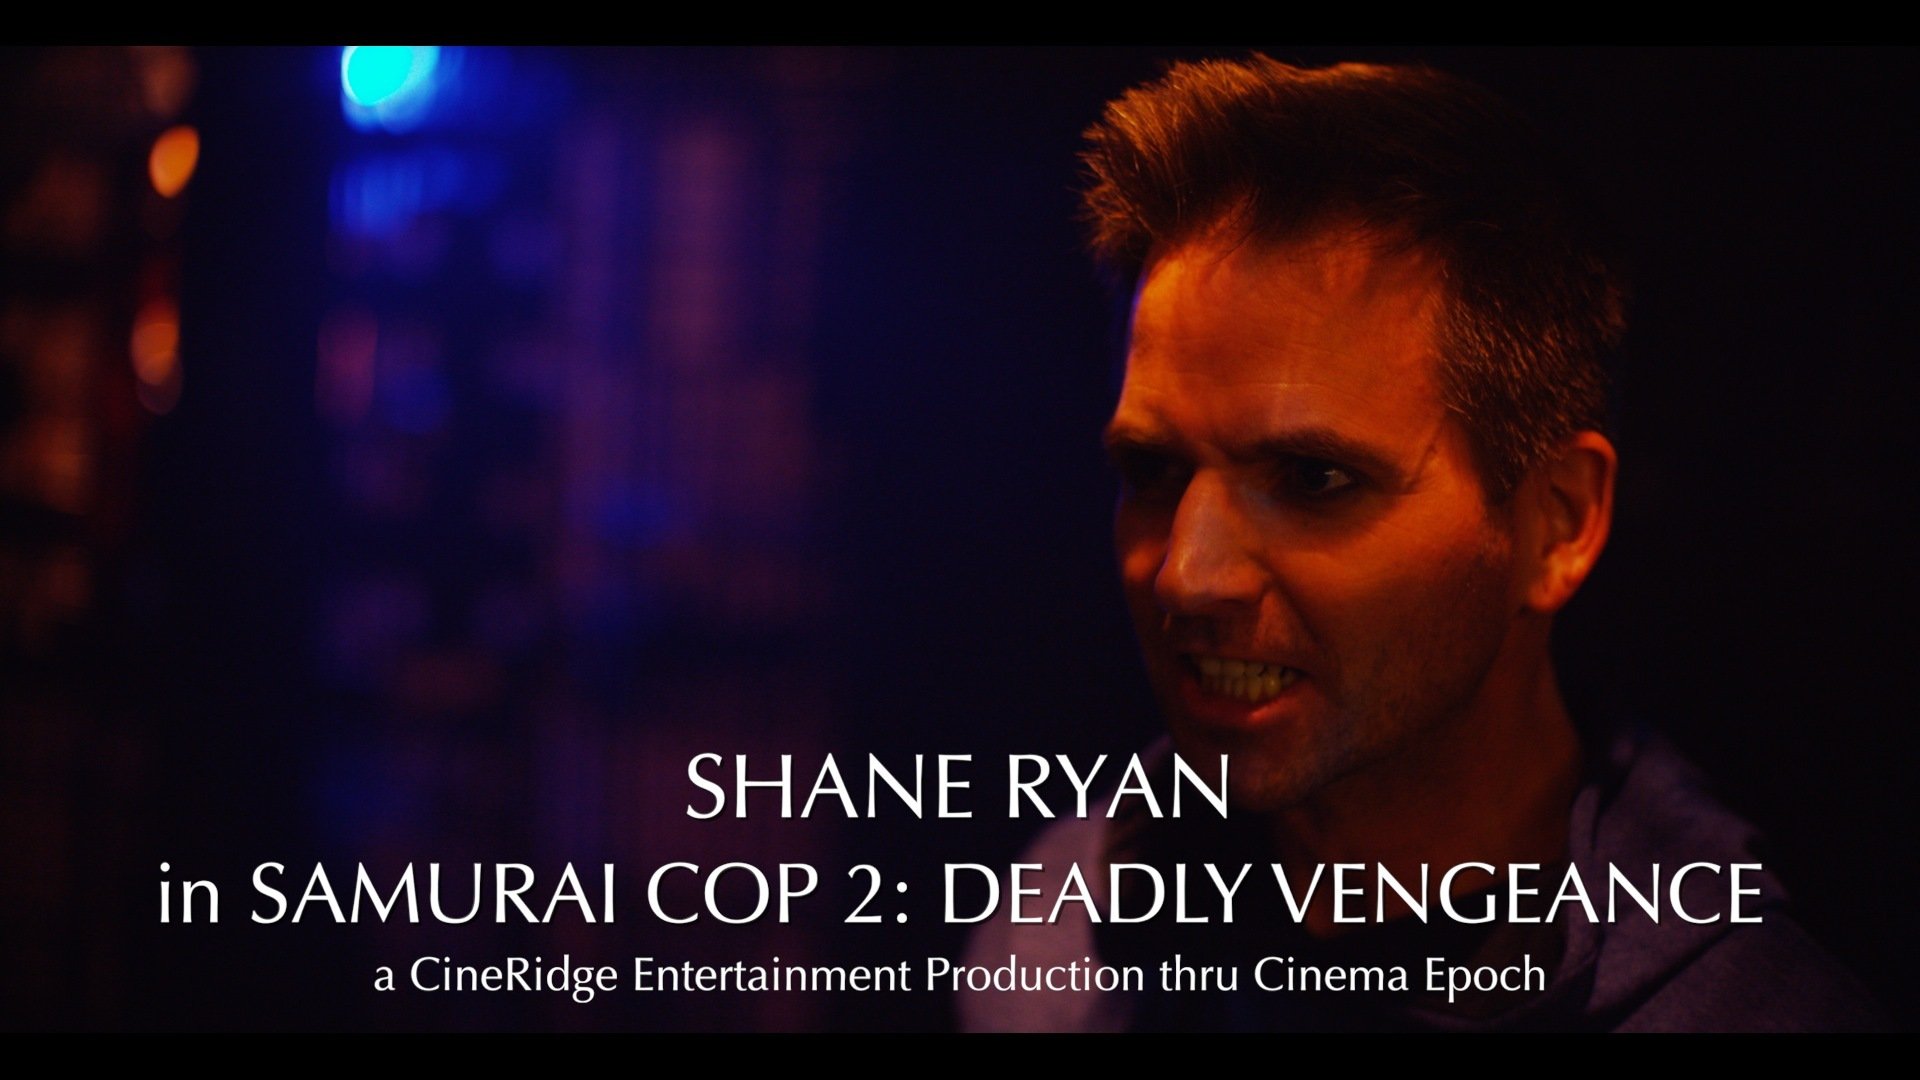 Samurai Cop 2: Deadly Vengeance (2015) Screenshot 1 